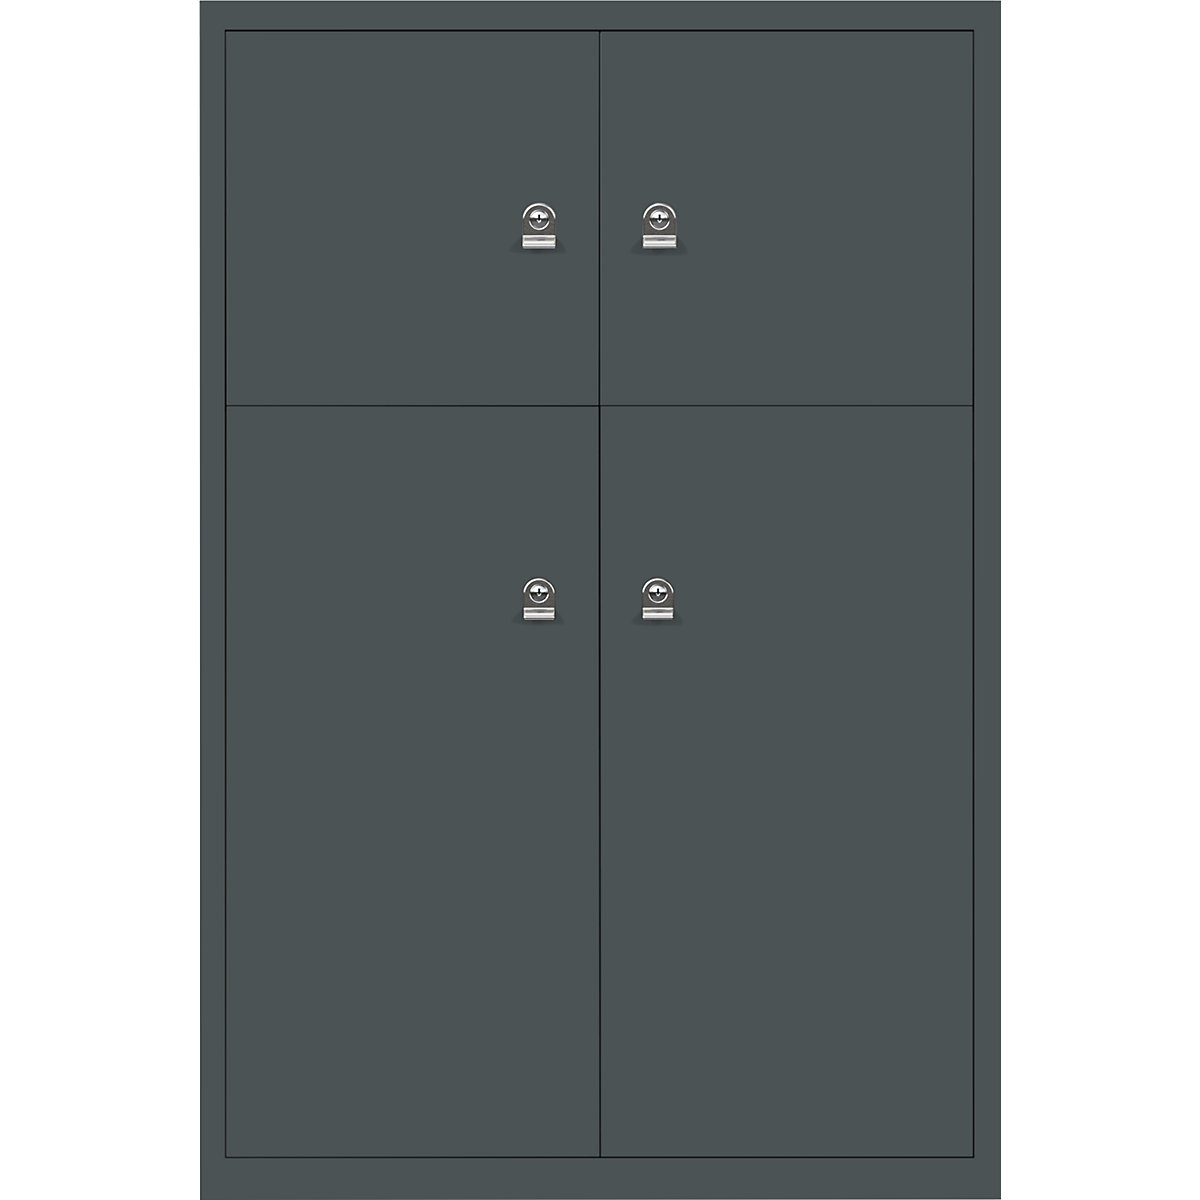 Omara s predelki z zaklepanjem LateralFile™ – BISLEY, 4 predelki z zaklepanjem, višina 2 x 375 mm, 2 x 755 mm, antracitno sive barve-8